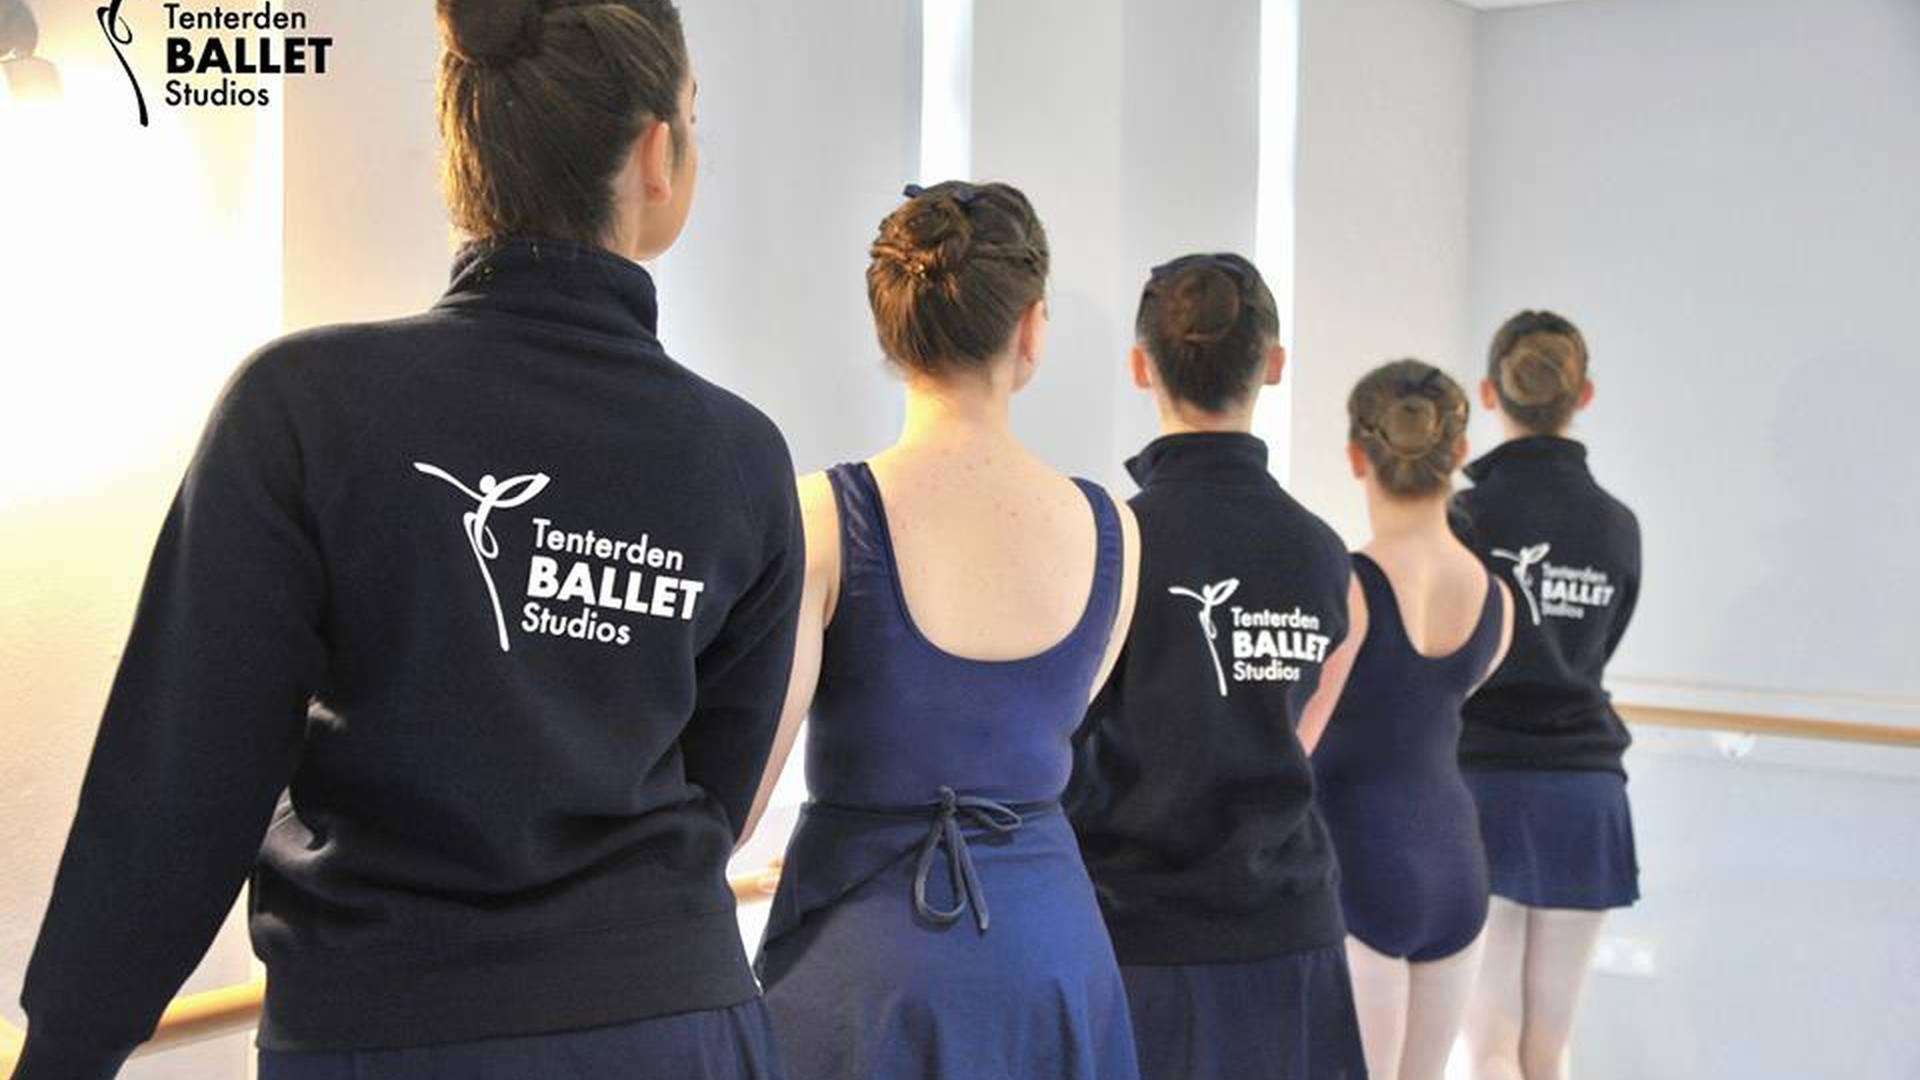 Tenterden Ballet Studios photo